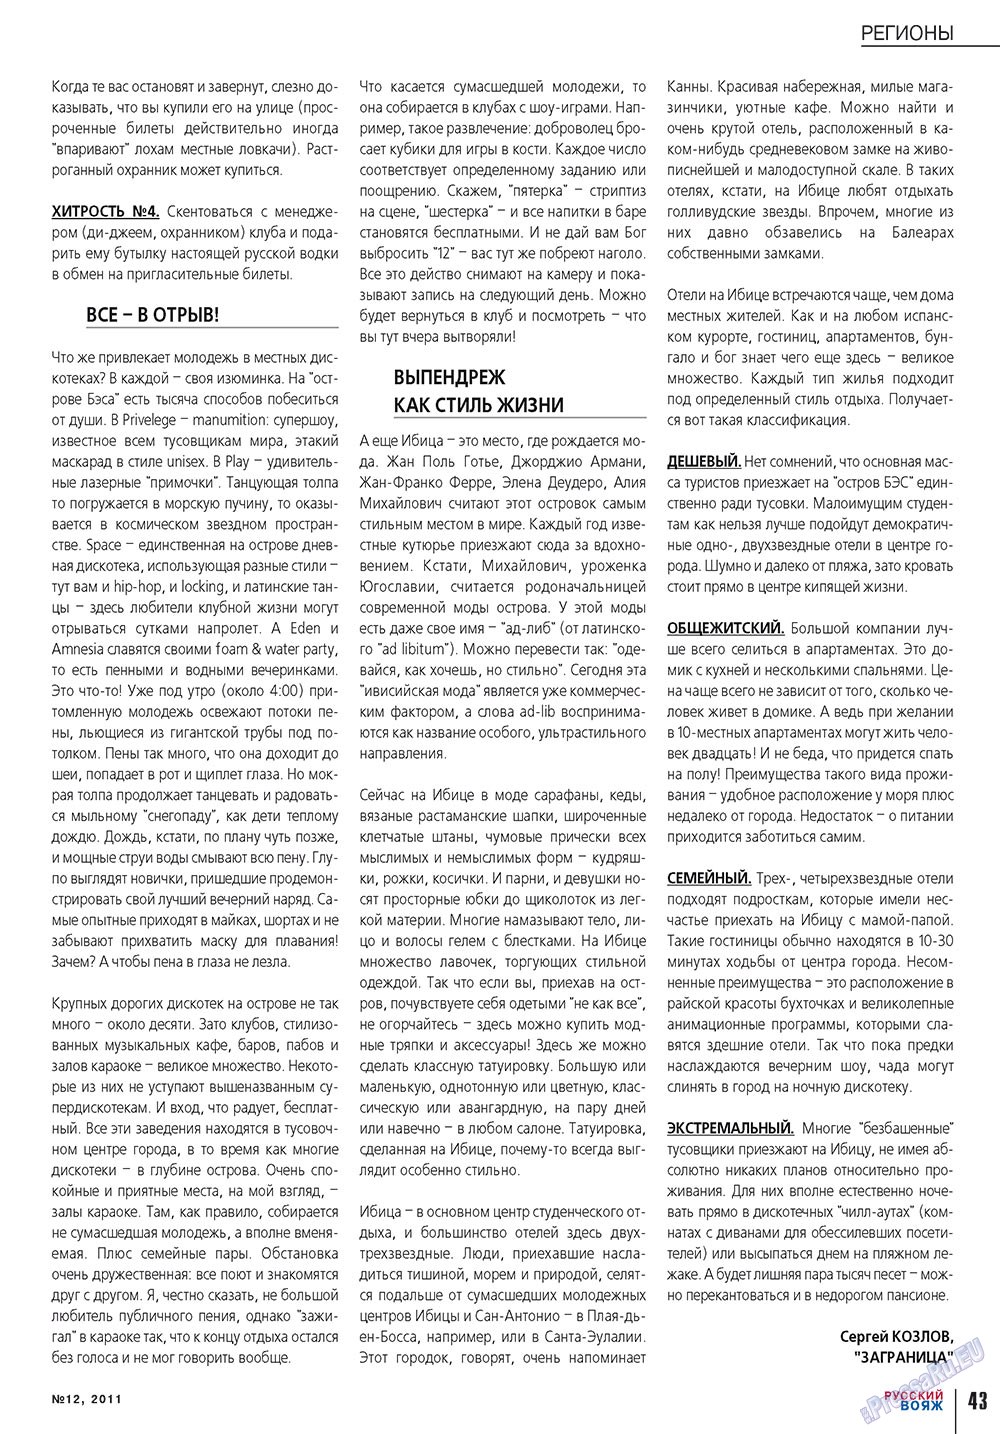 Русский вояж, журнал. 2011 №12 стр.43